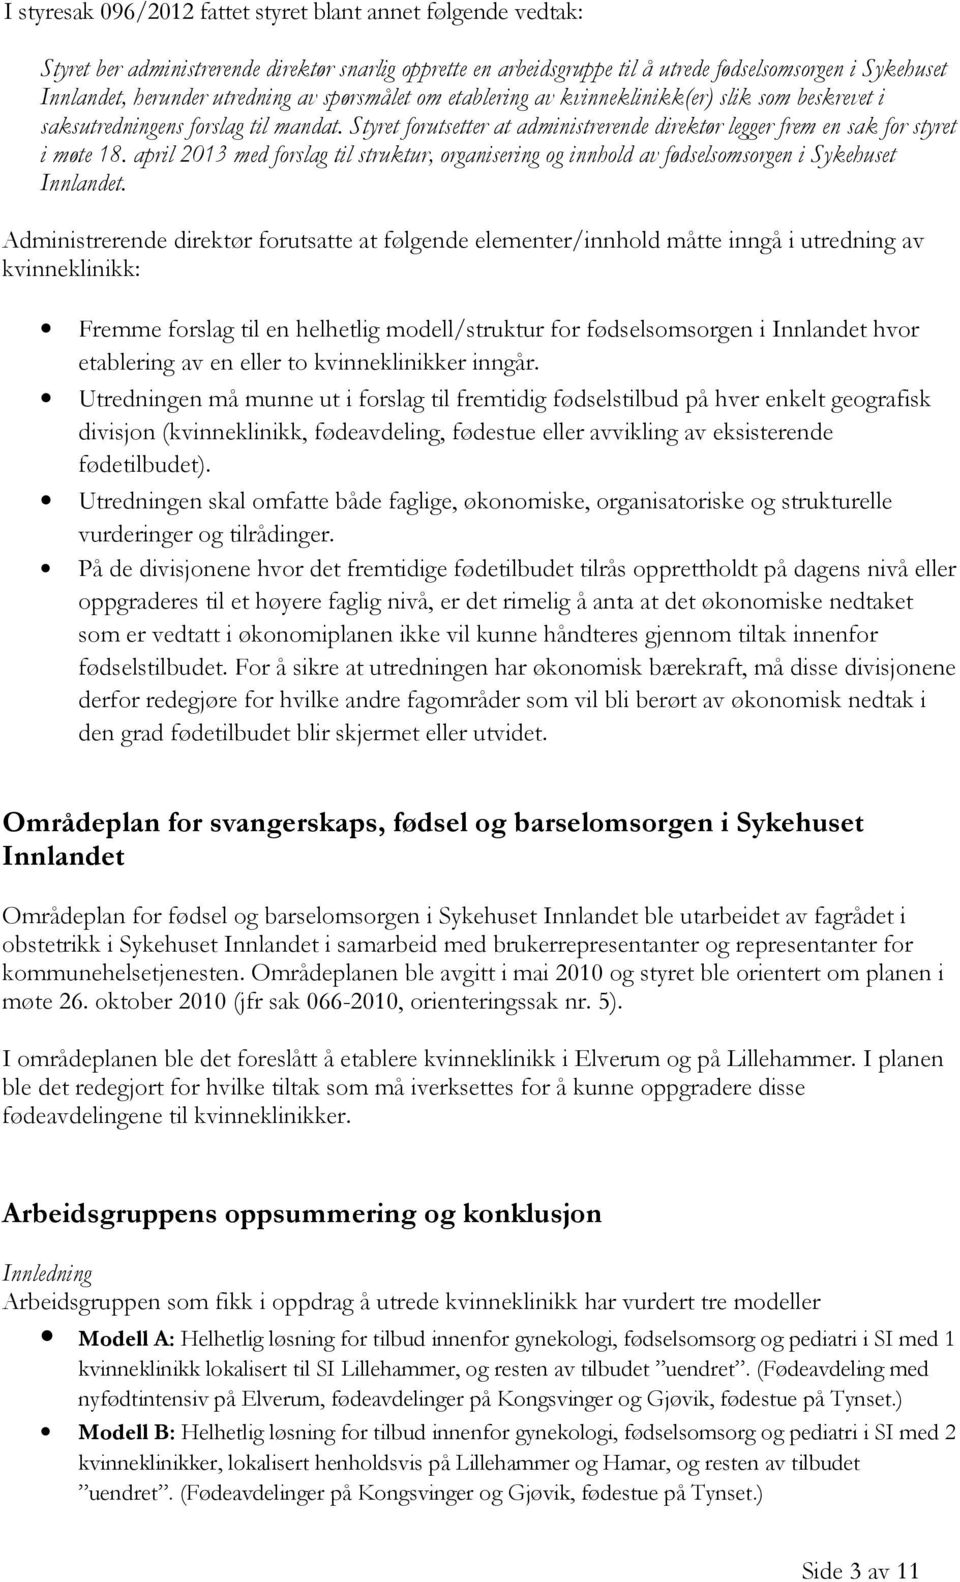 Styret forutsetter at administrerende direktør legger frem en sak for styret i møte 18. april 2013 med forslag til struktur, organisering og innhold av fødselsomsorgen i Sykehuset Innlandet.